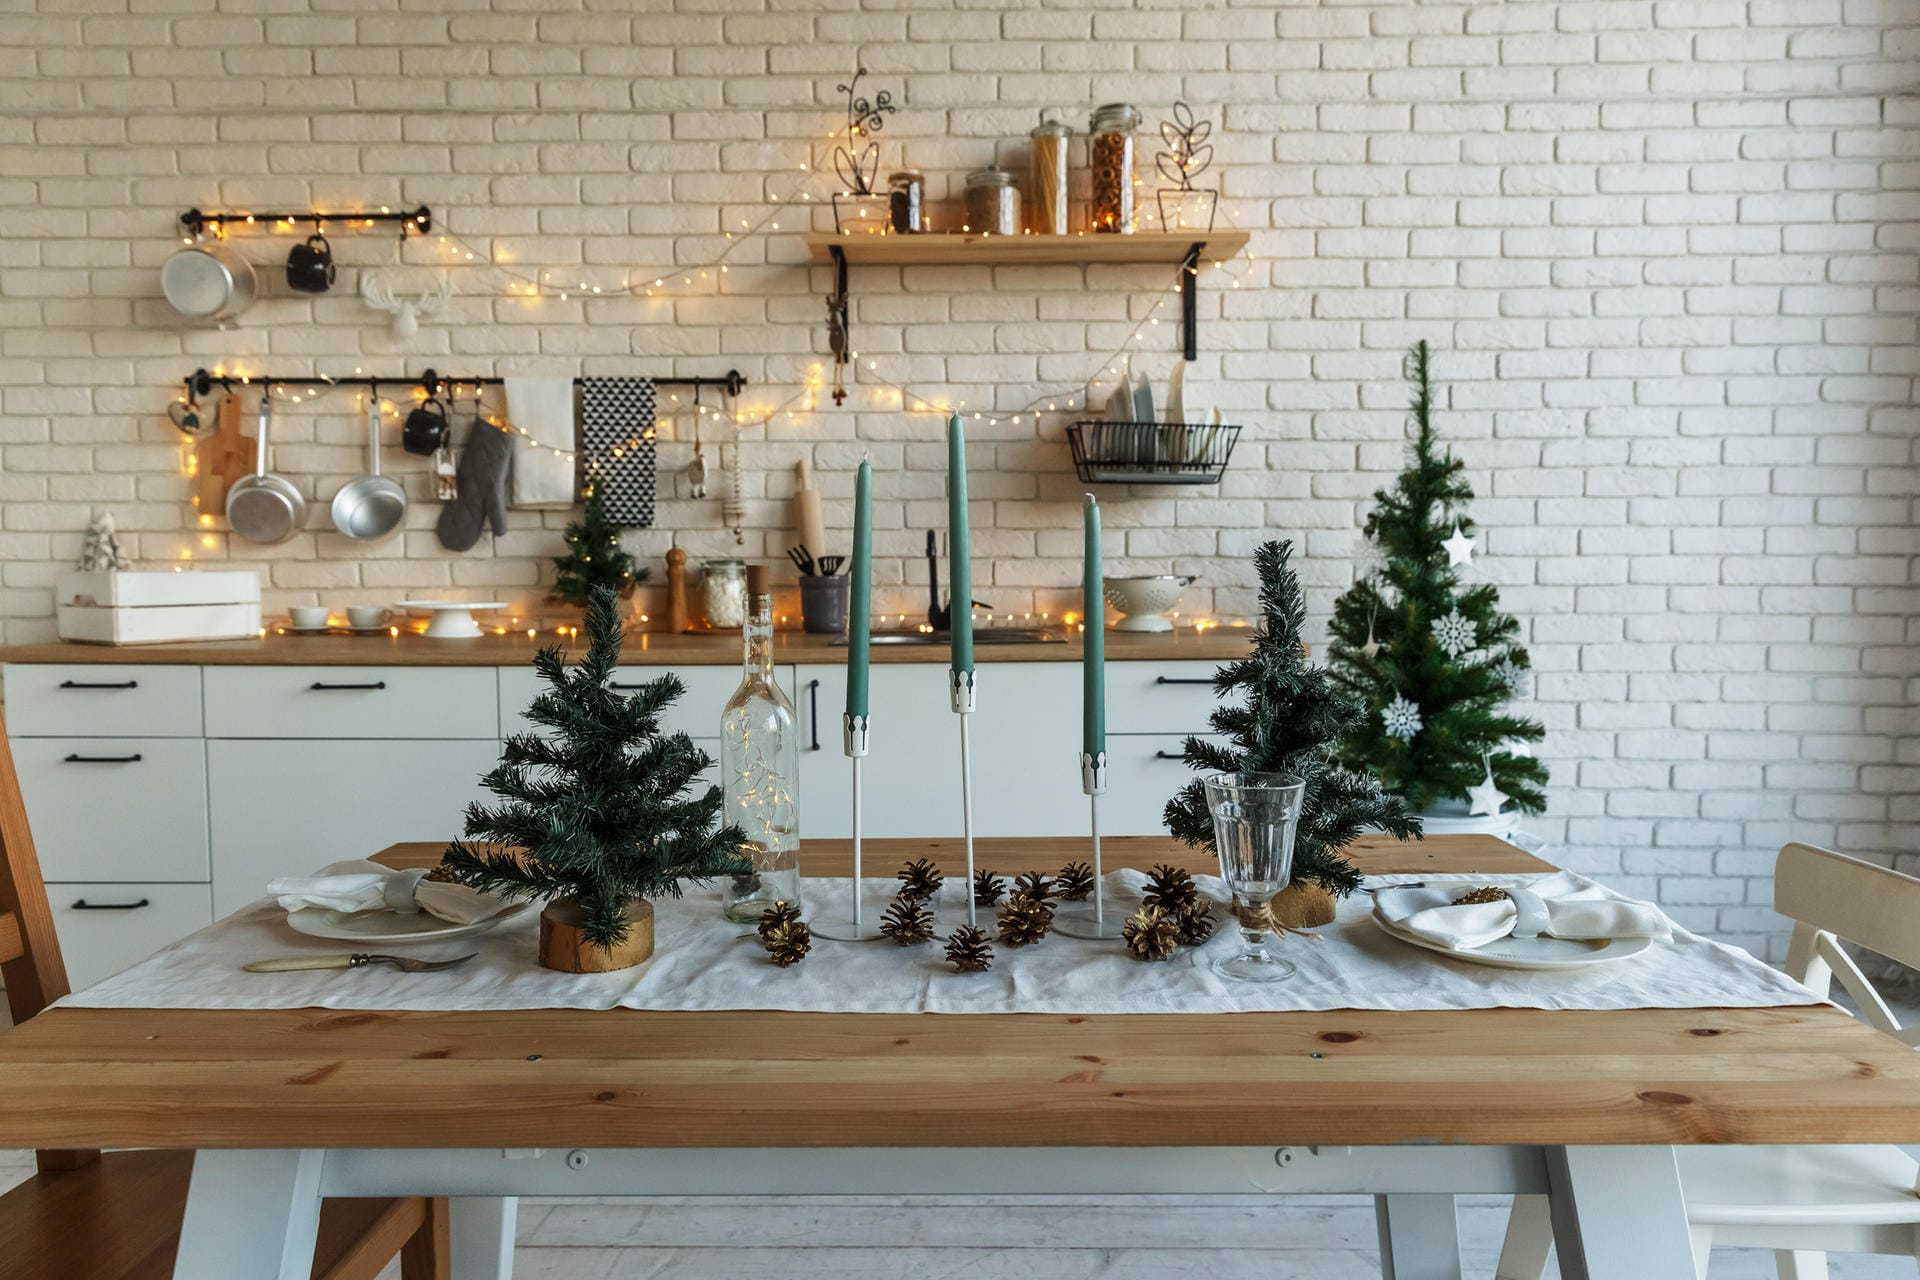 Weihnachtlicher Esstisch und geschmückte Küchenzeile: Tannenbäume und Lichter sind eine klassische Weihnachtsdekoration, die natürlich auch auf dem Esstisch zur Geltung kommen kann.